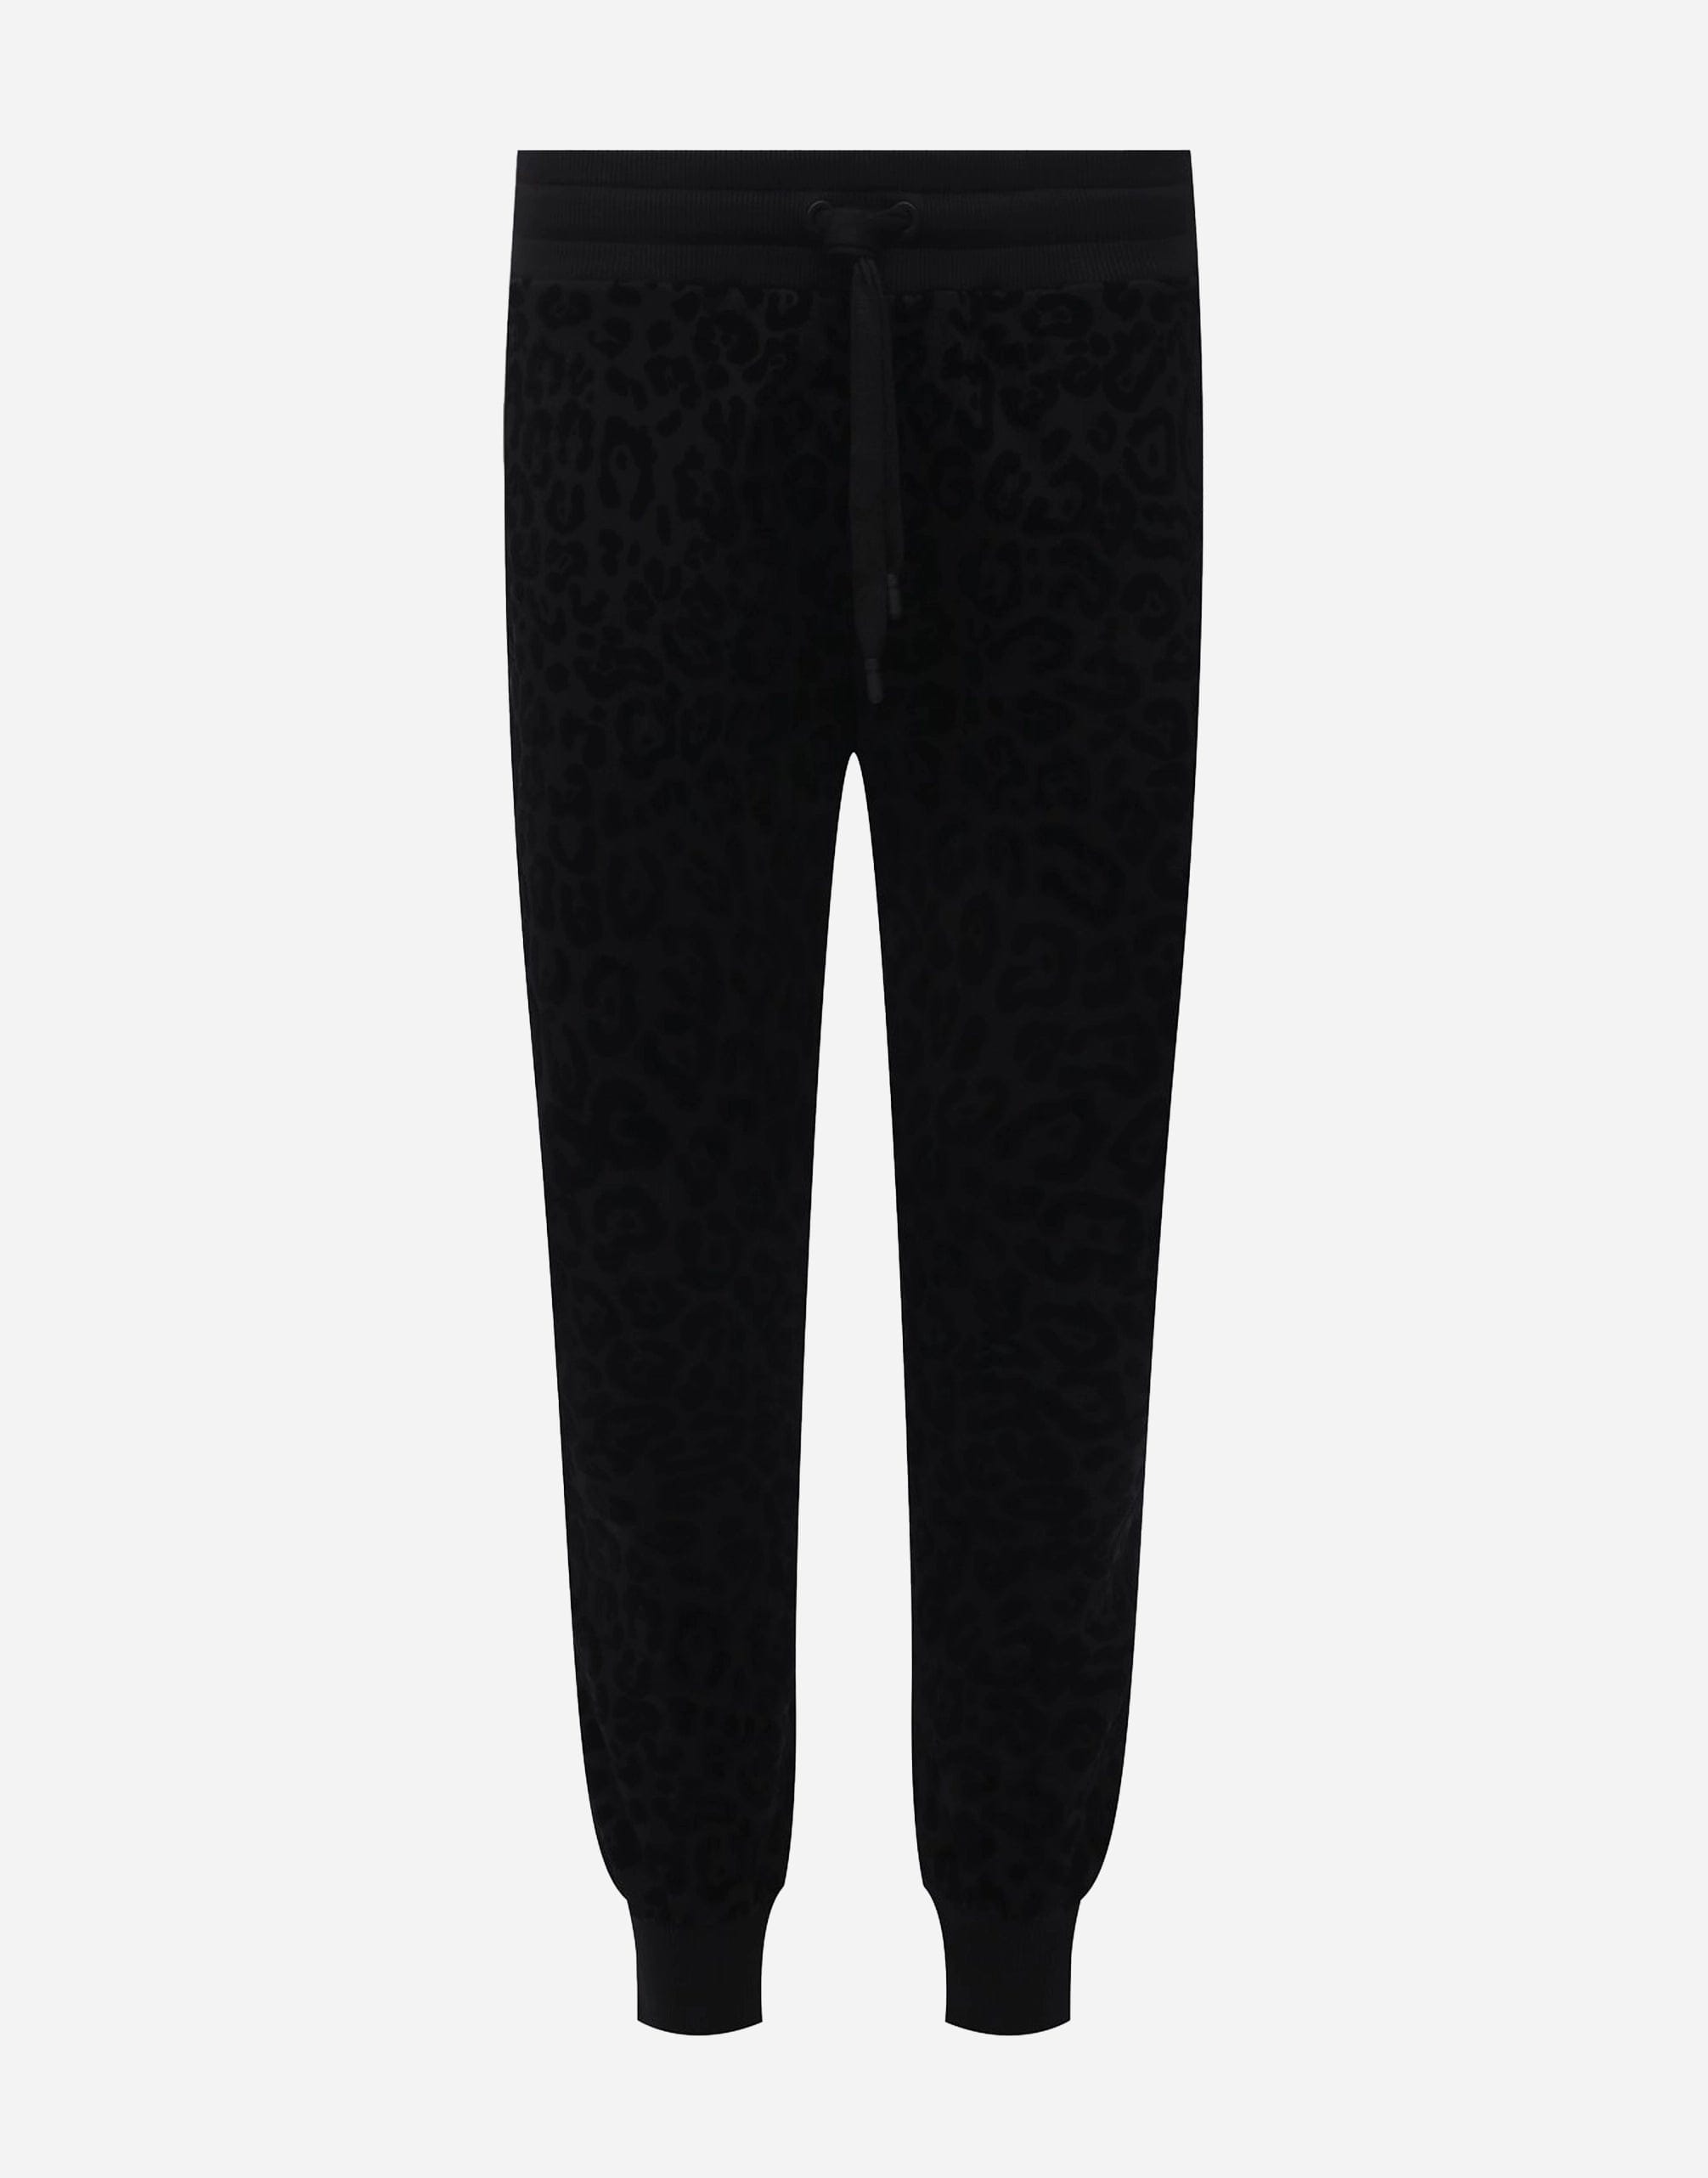 Dolce & Gabbana Leopard-Flock Cotton Jogging Pants